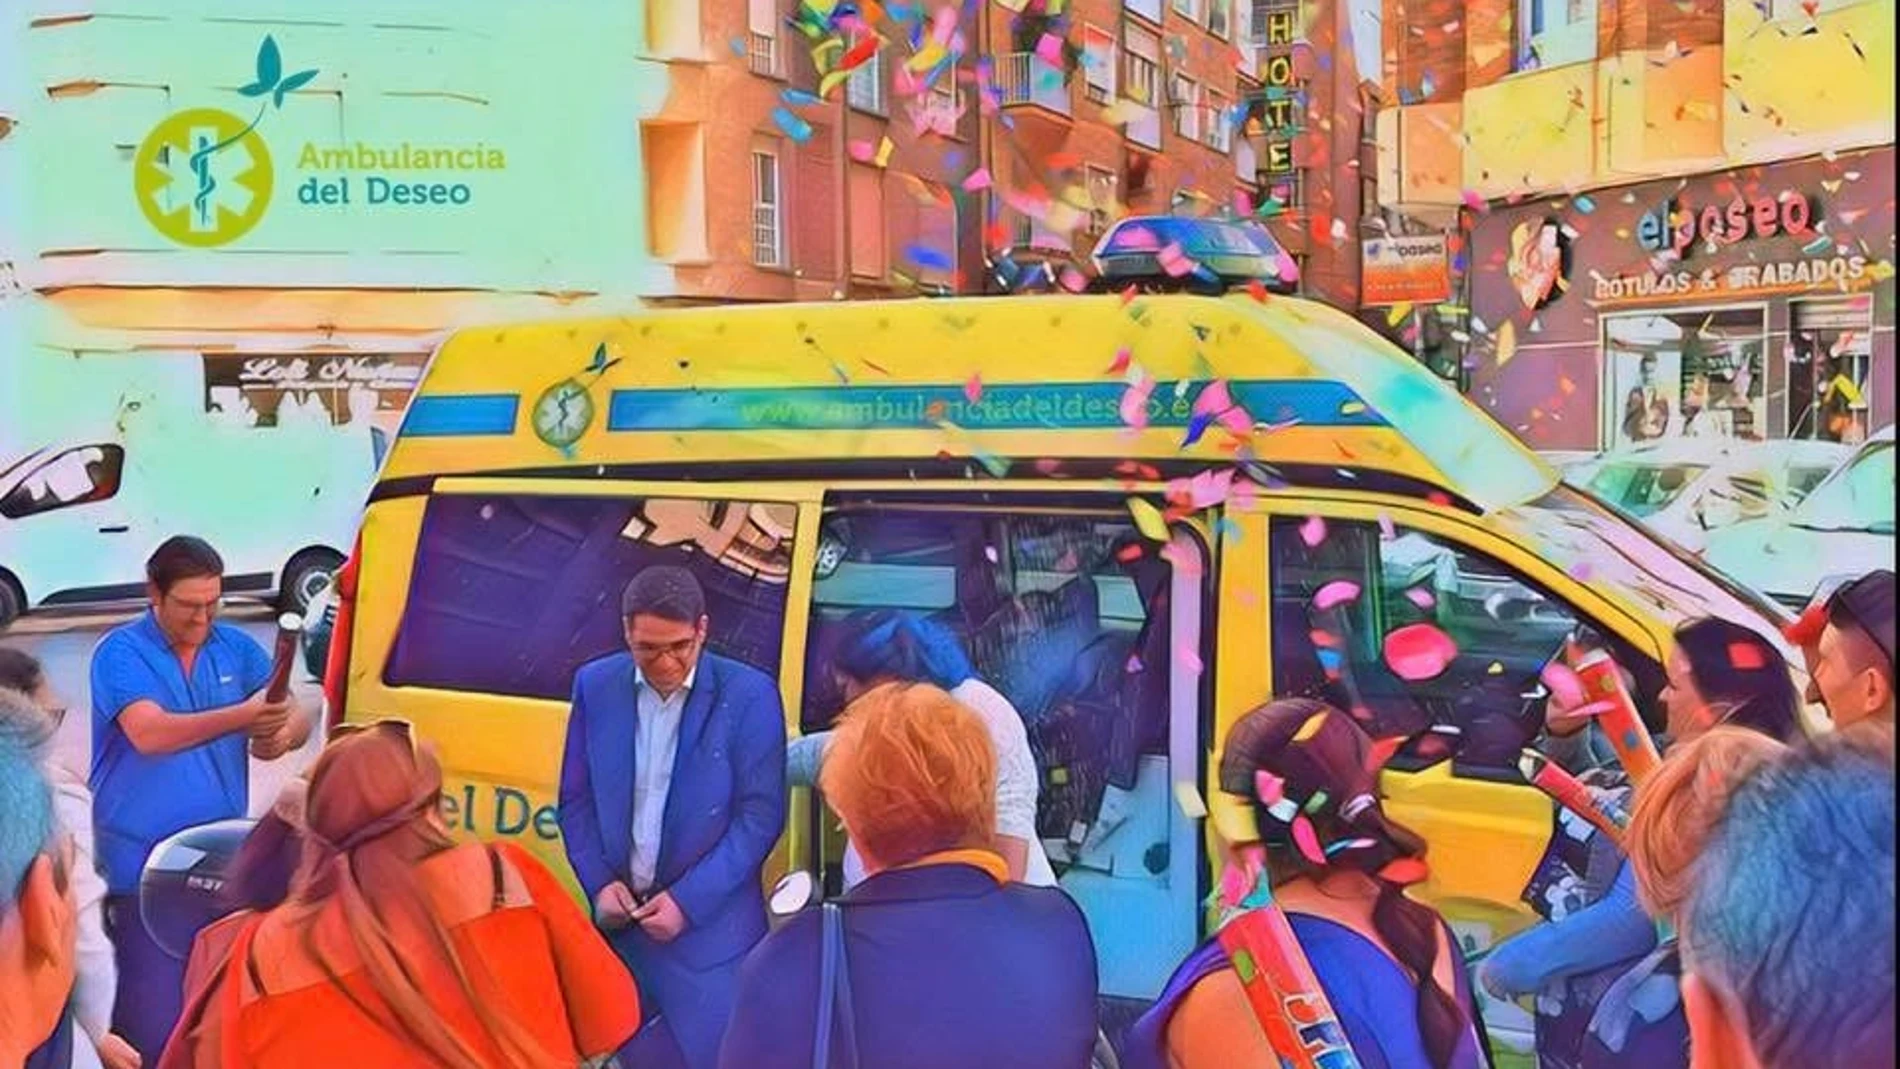 Ofician una boda en una ambulancia en Cartagena para cumplir el último deseo del padrino, el padre del novio